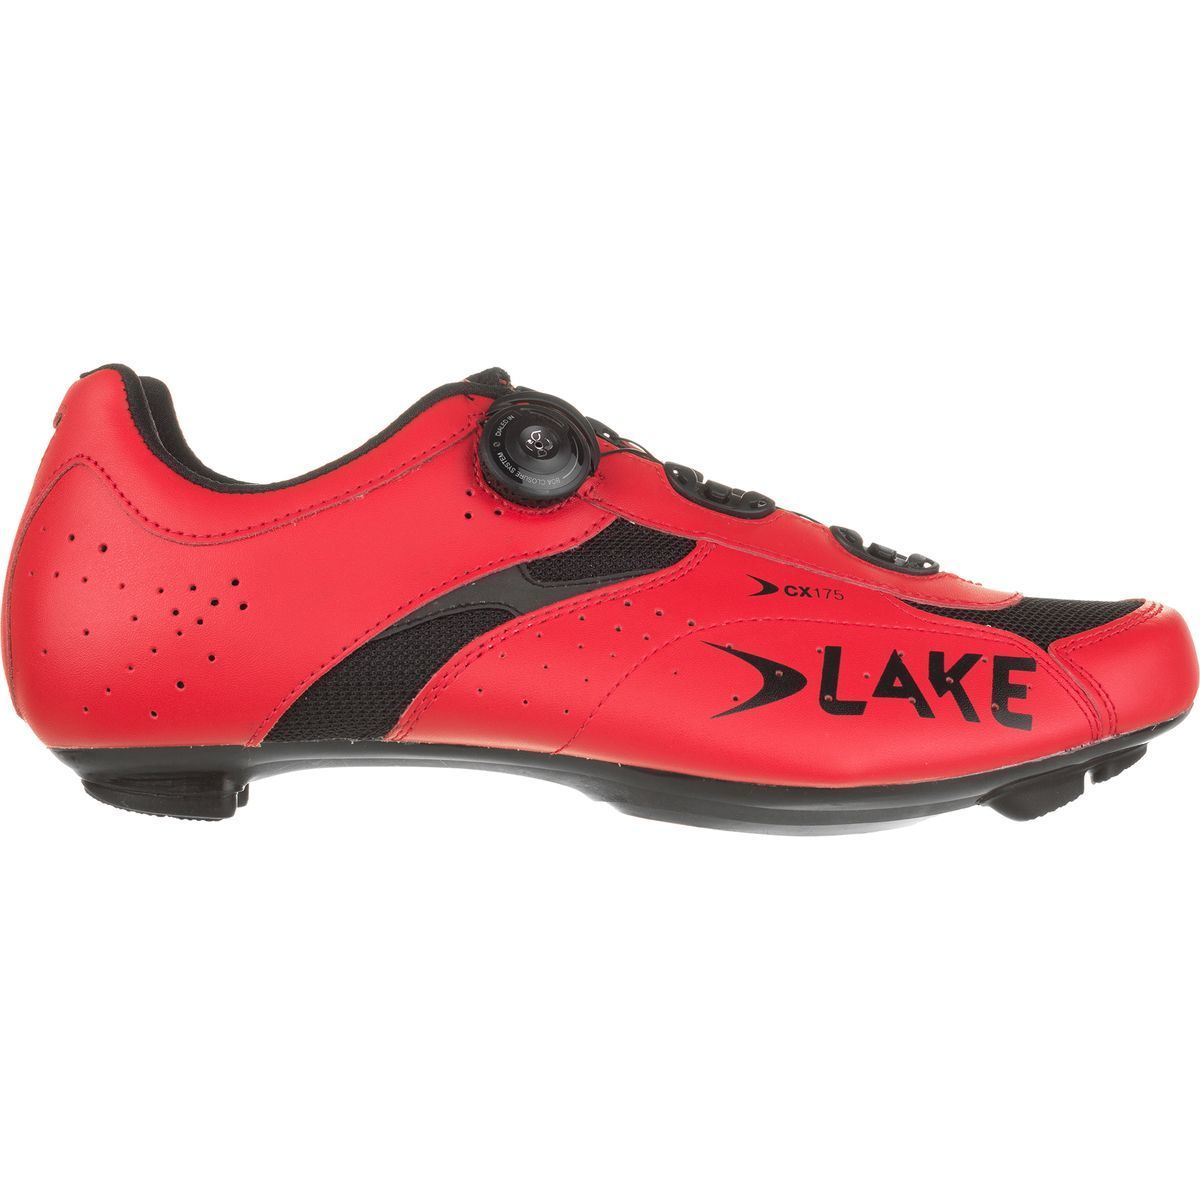 Lake CX175 Shoes Mens